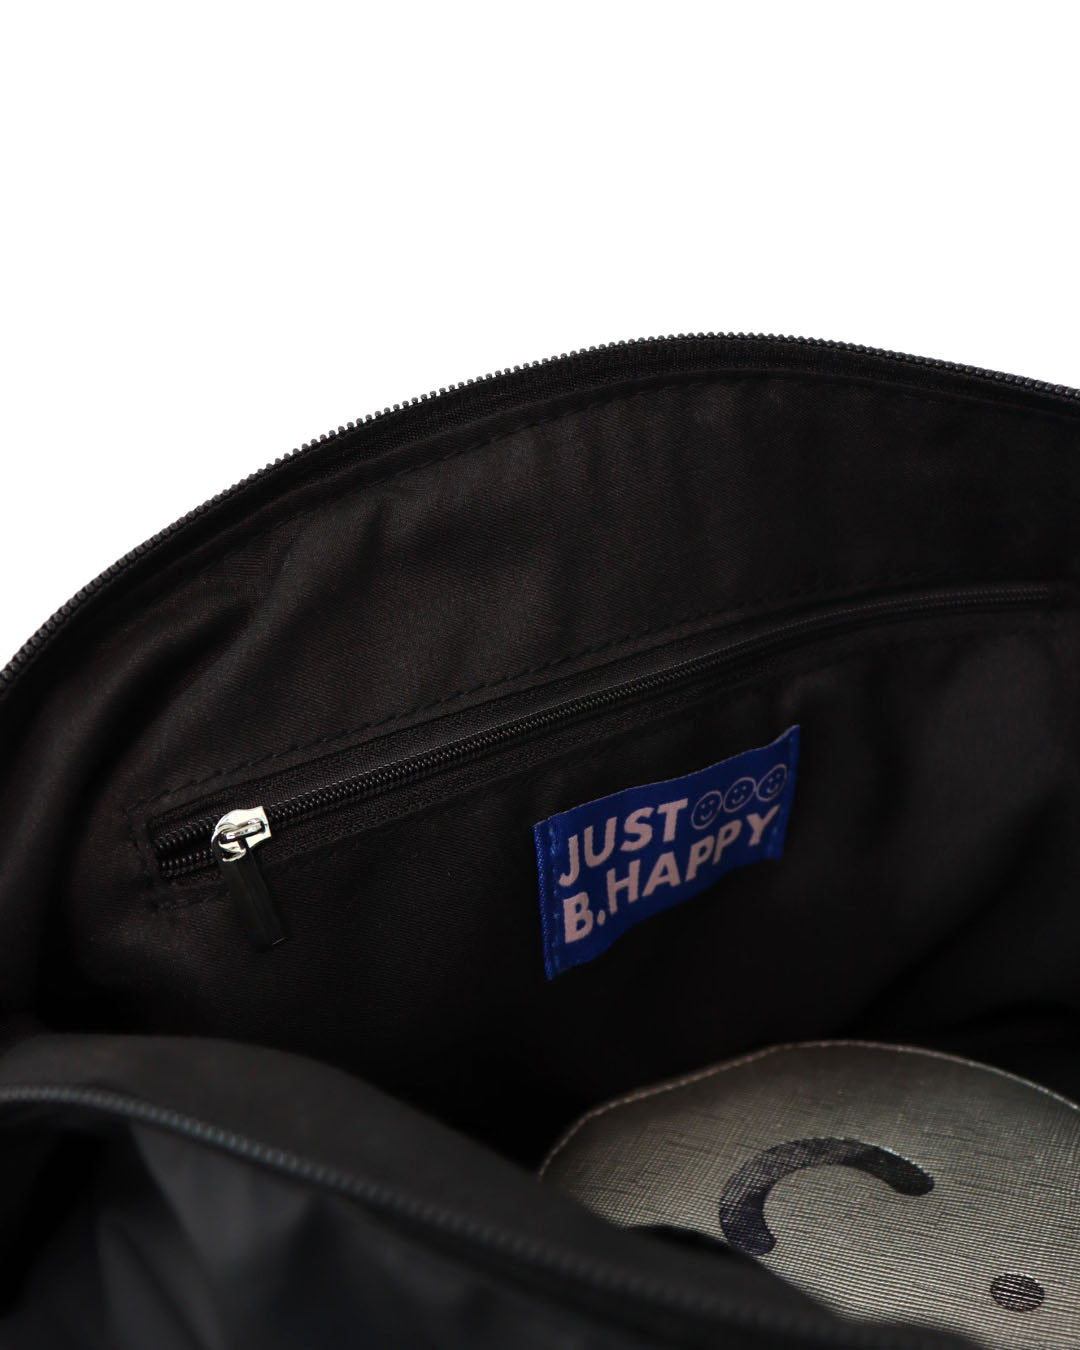 Signature ZZZ Bolster Sling/Shoulder Bag in Matte Black